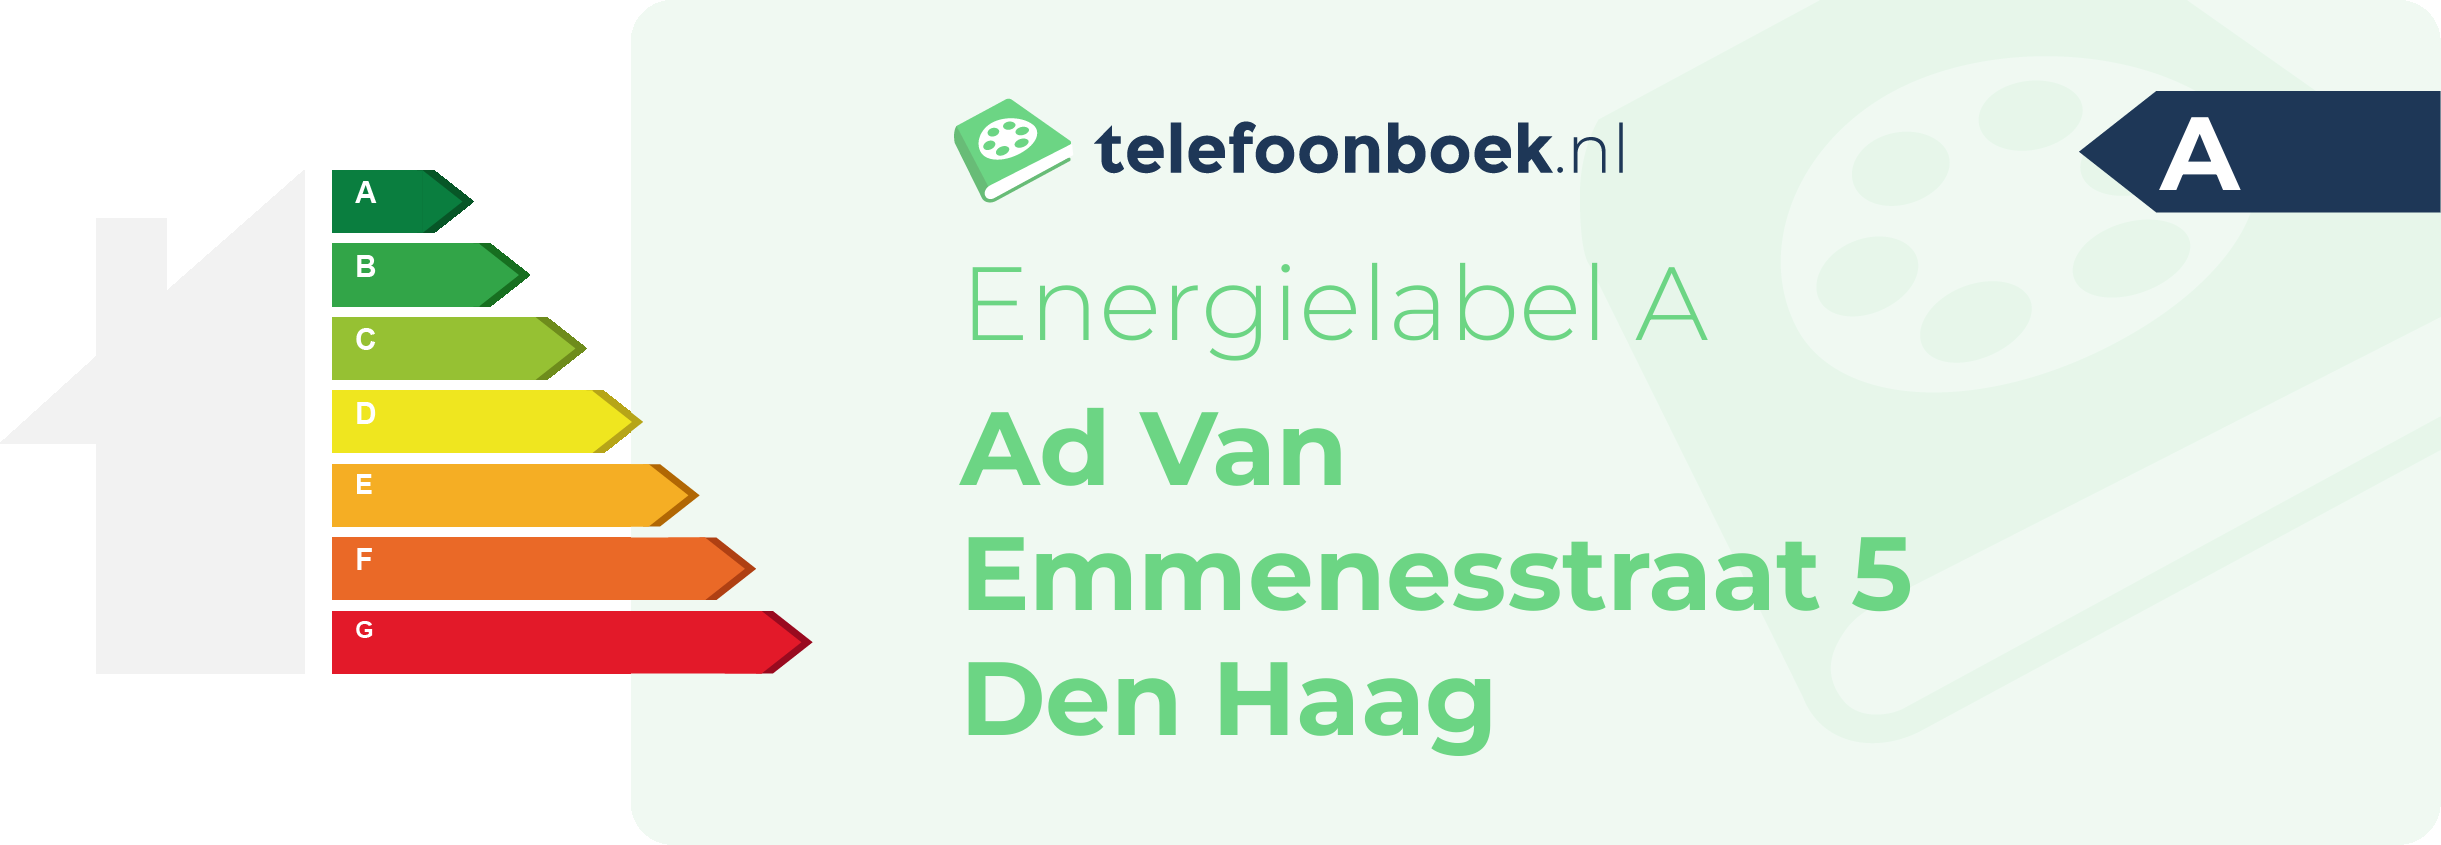 Energielabel Ad Van Emmenesstraat 5 Den Haag